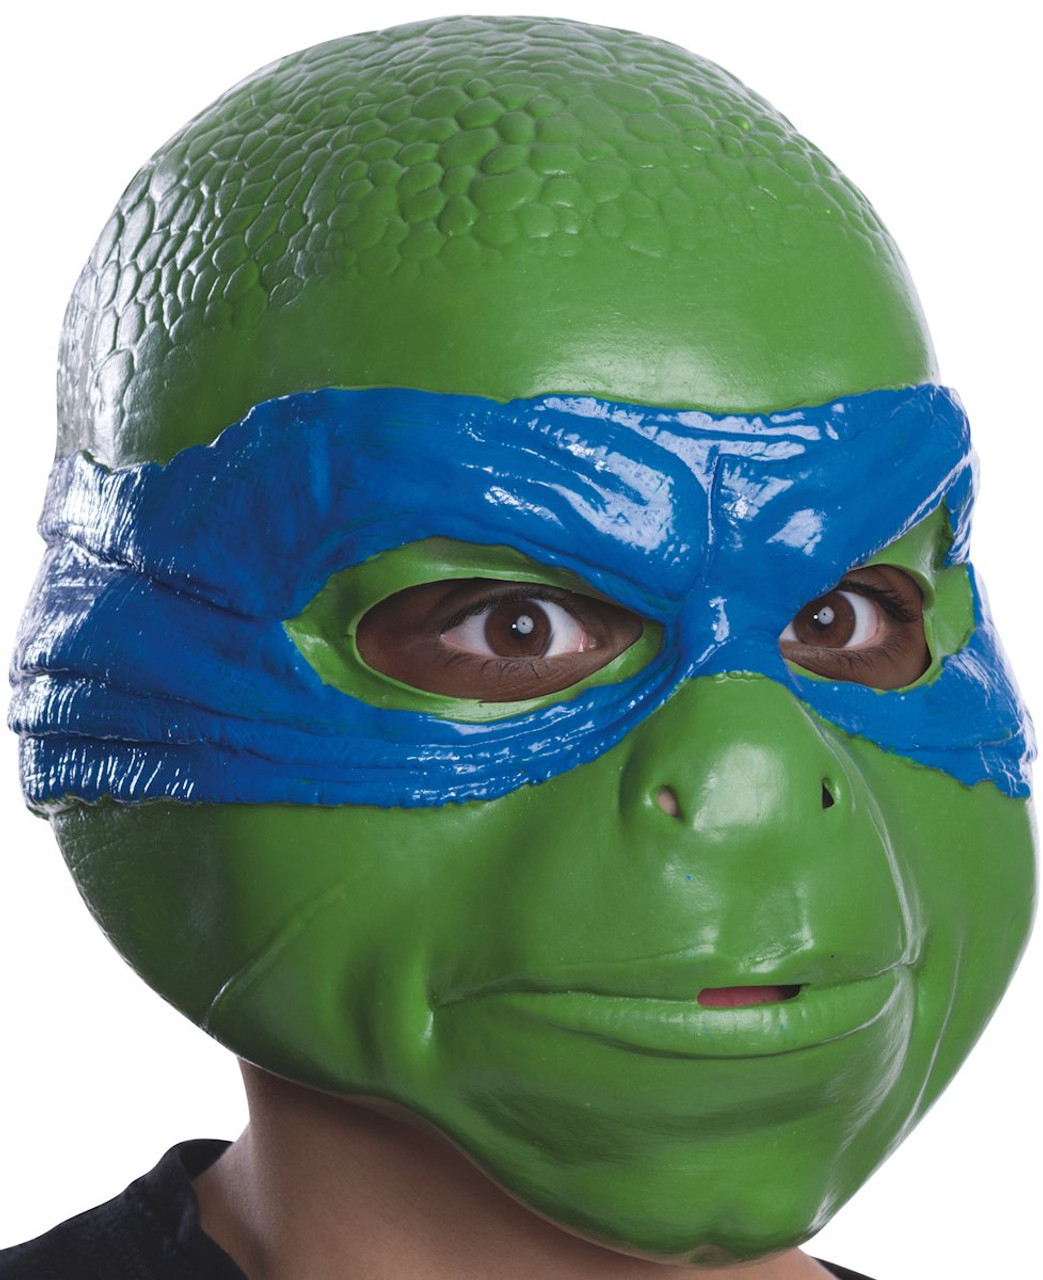 Teenage Mutant Ninja Turtles Leonardo Costume Size 7 8 Med New Hard Plastic  Mask